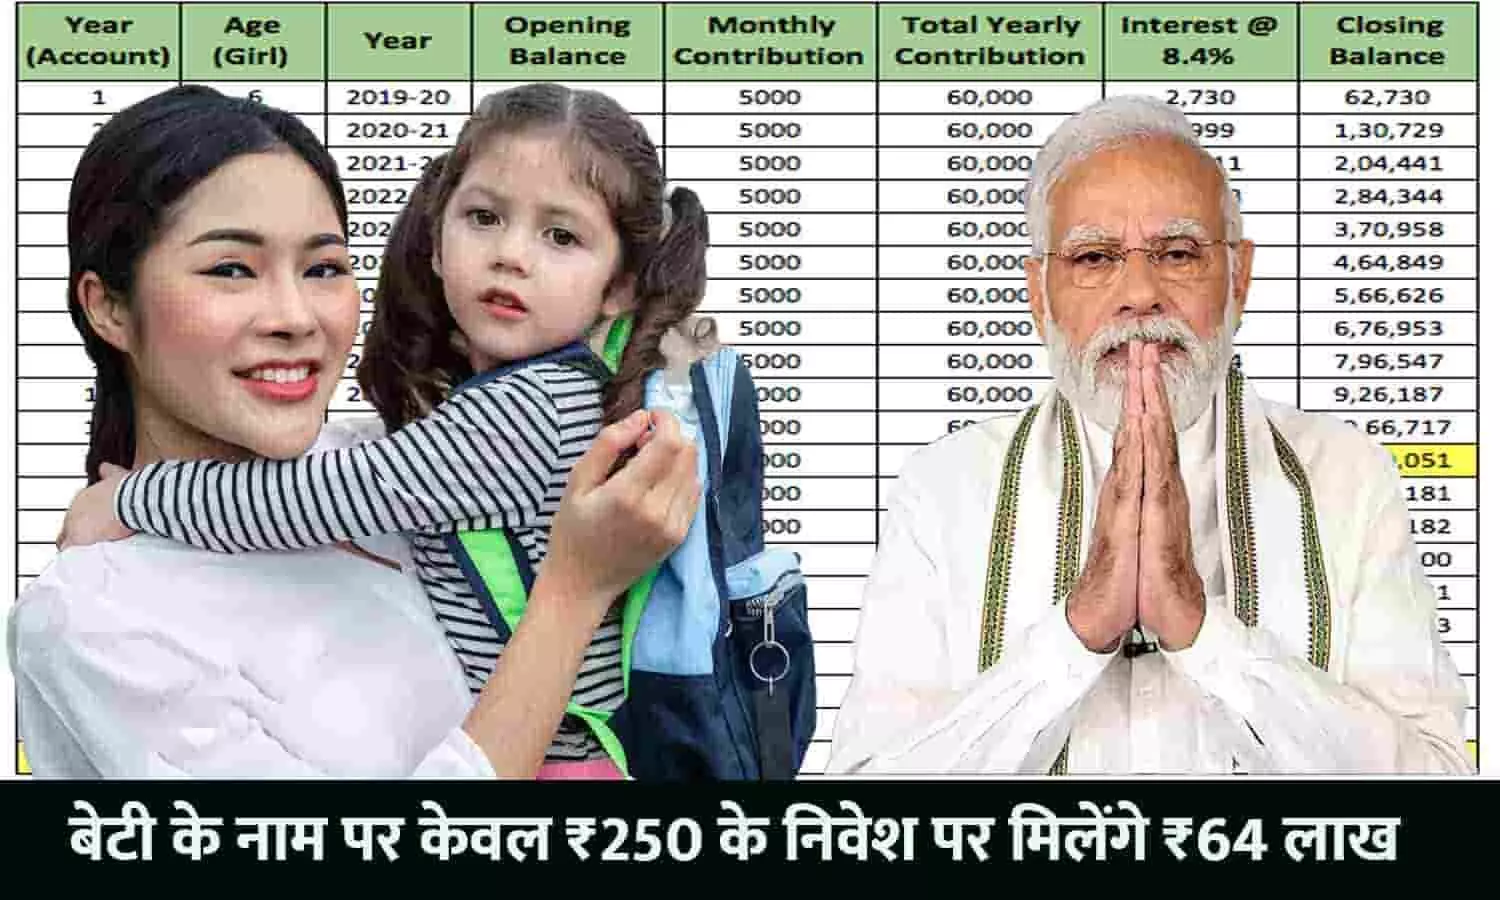 Post Office Sukanya Samriddhi Scheme: बेटी के नाम पर केवल ₹250 के निवेश पर मिलेंगे ₹64 लाख, करे अप्लाई?